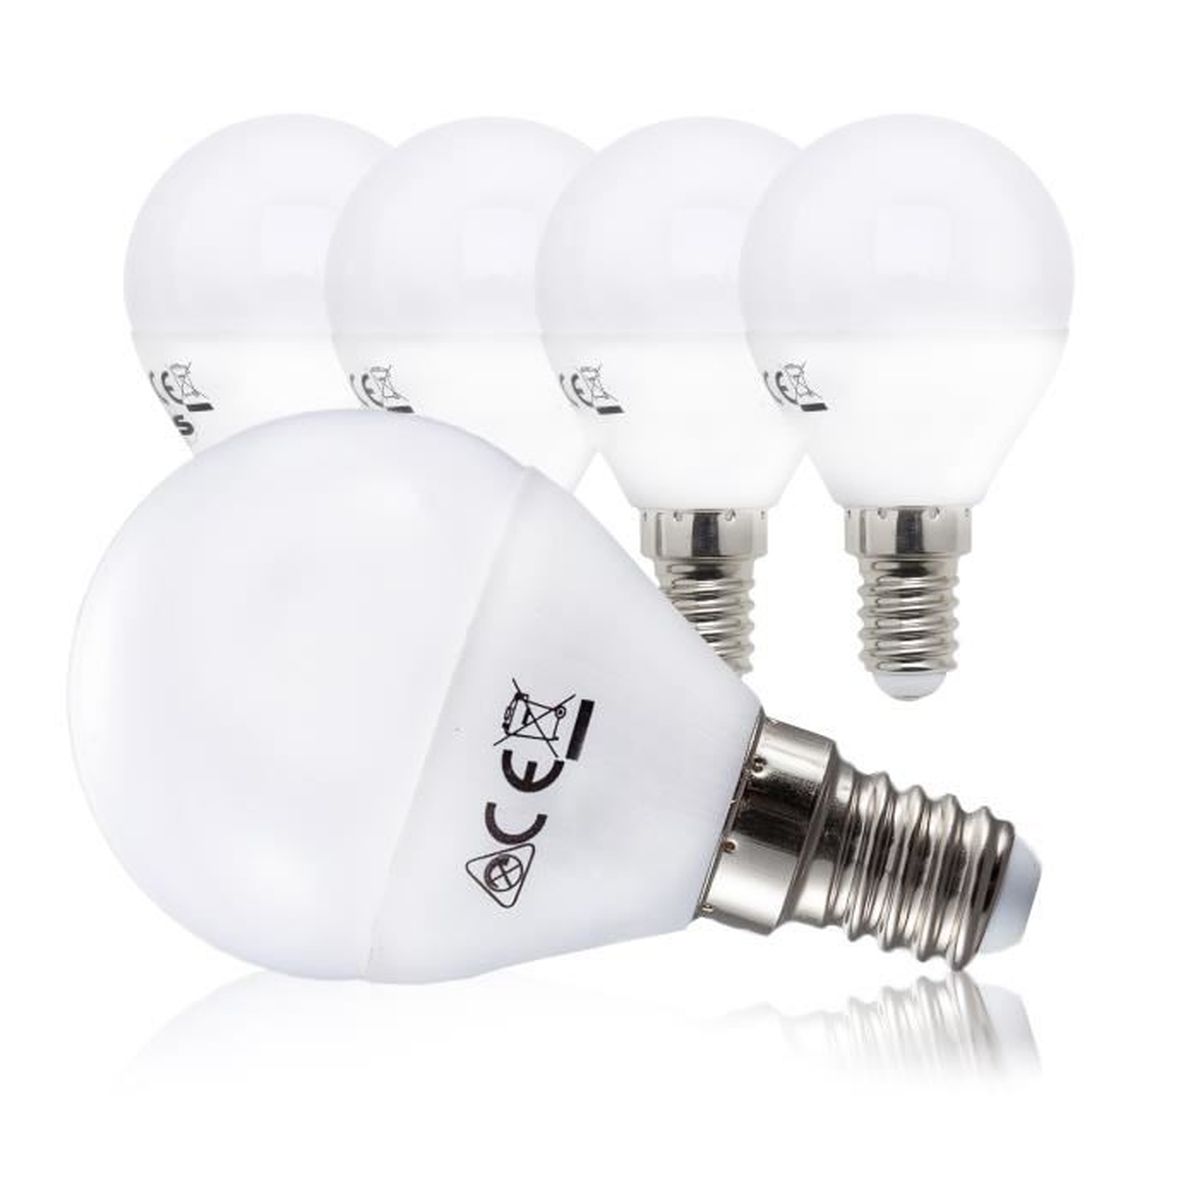 LEDLUX Lot de 3 ampoules à LED E14 Tube T26 2 W 180 lm 220 V pour hotte de cuisine réfrigérateur micro-ondes 